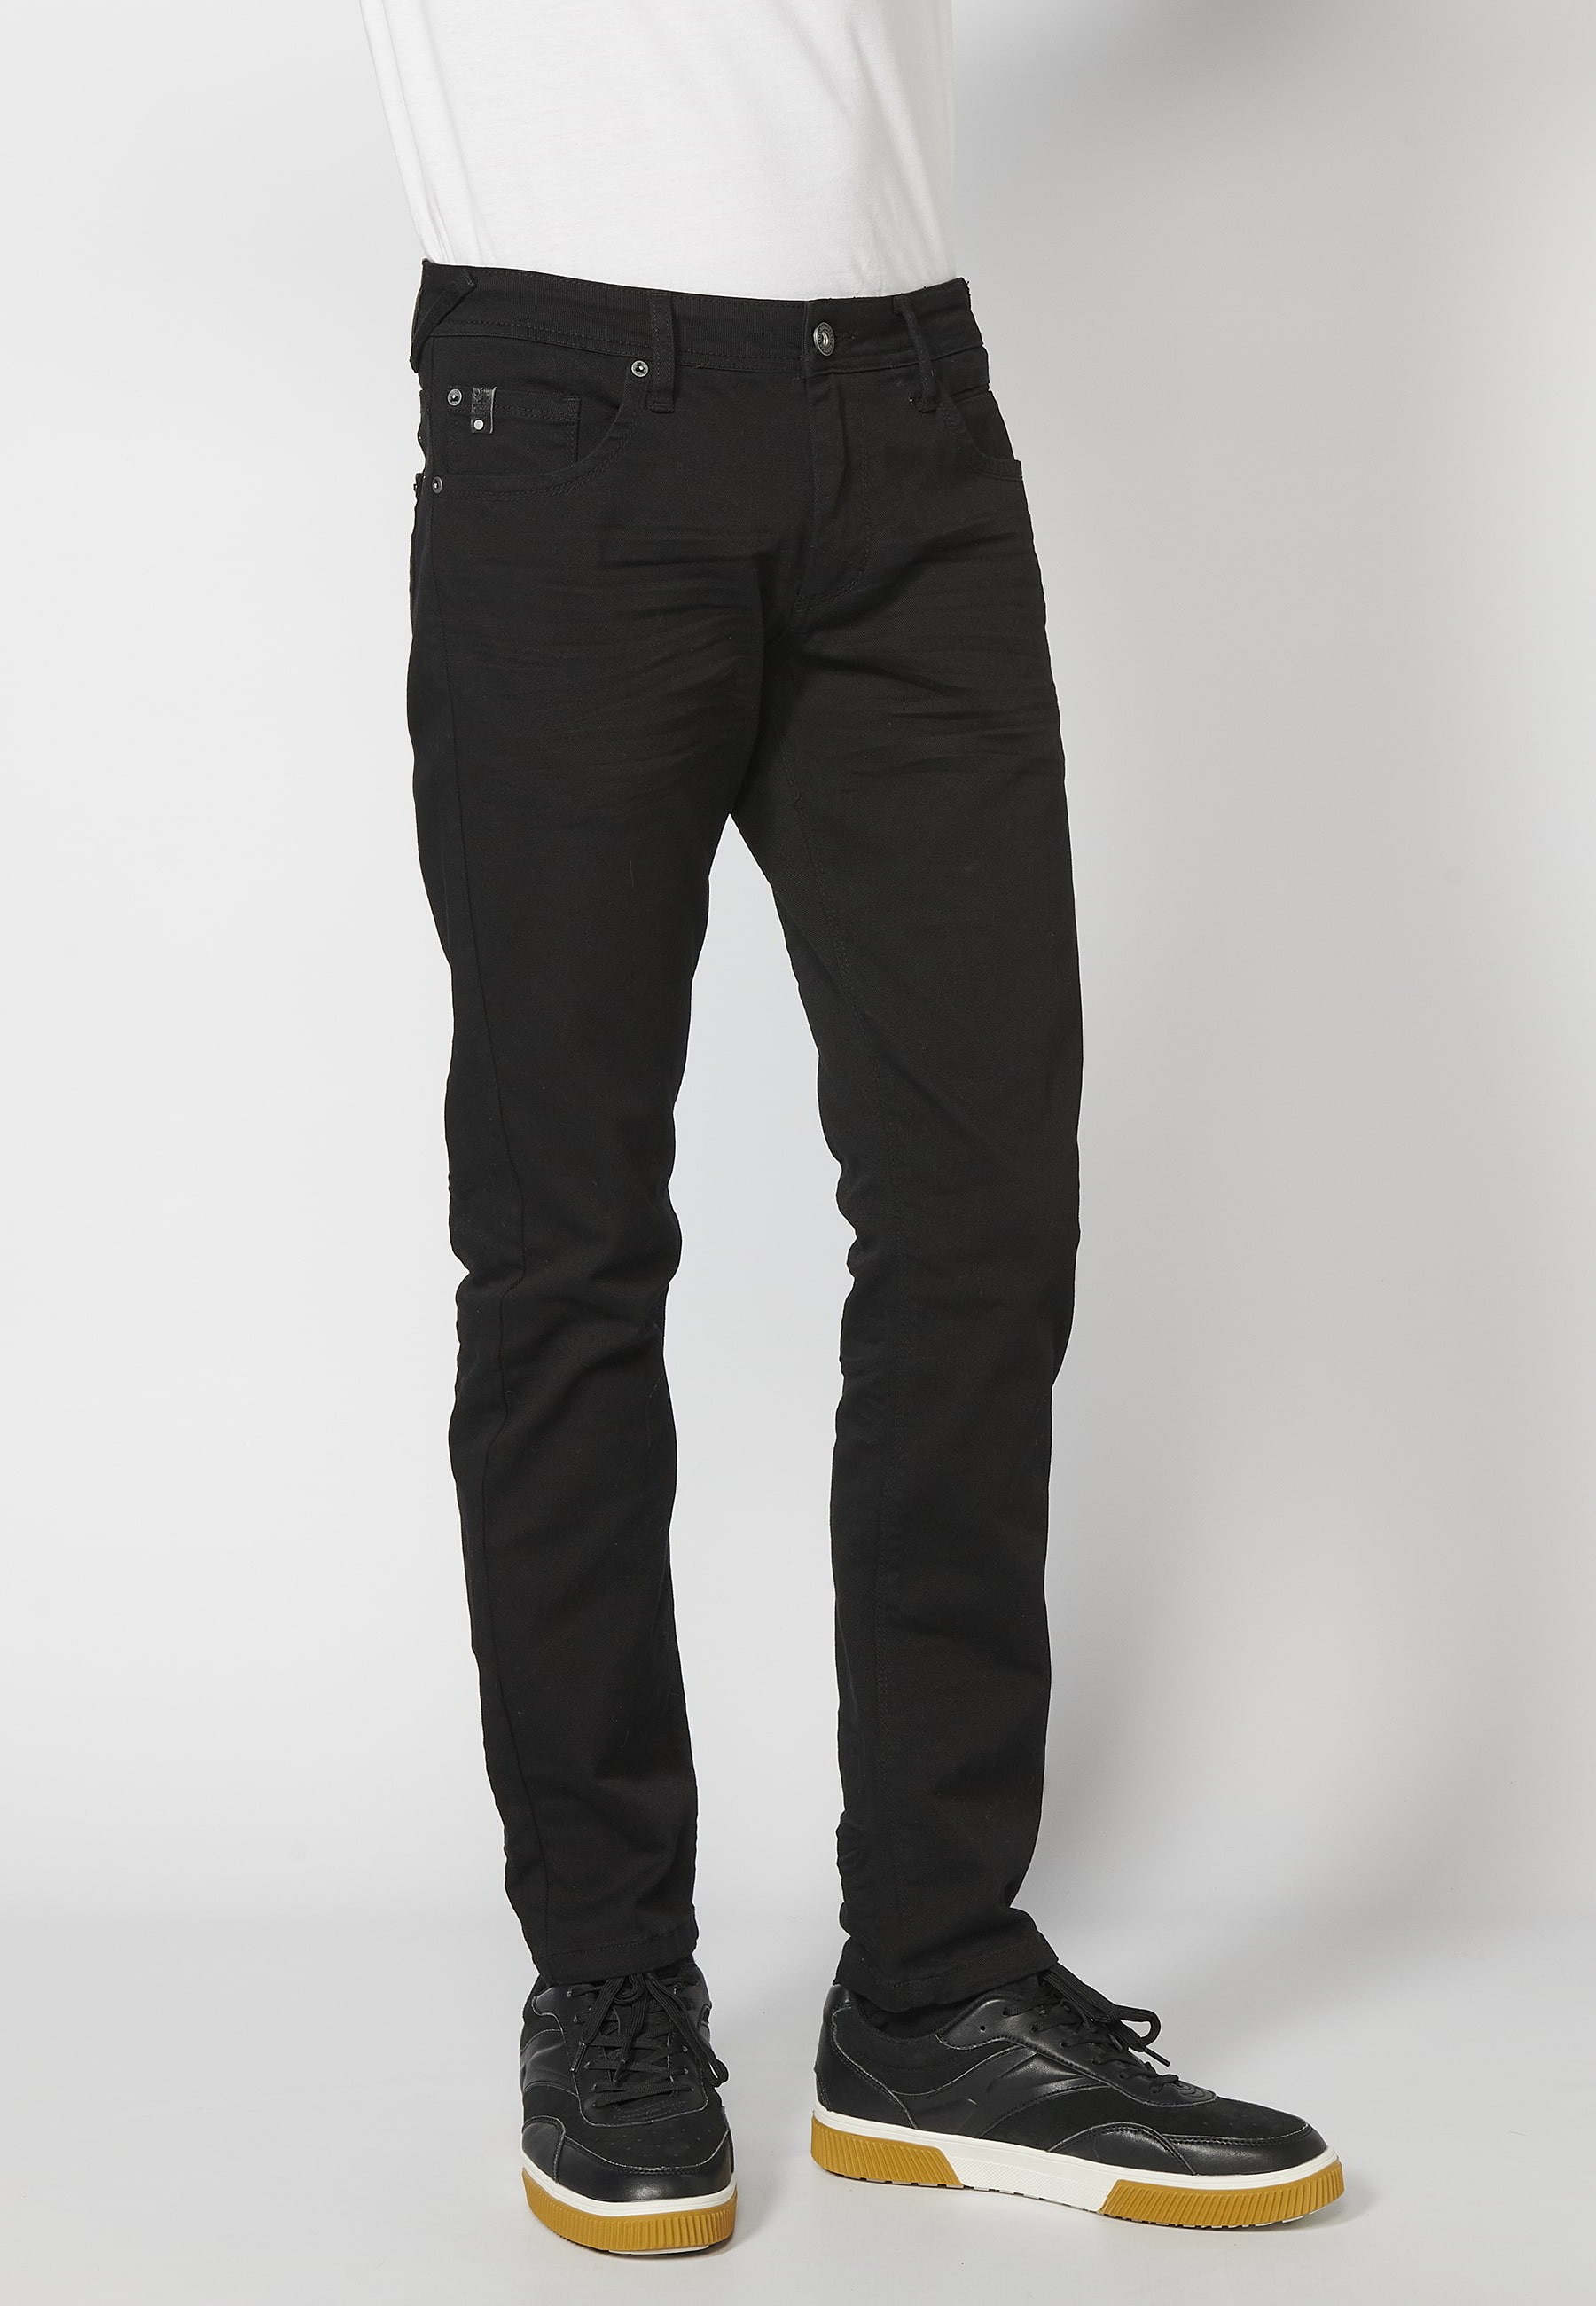 Lange Stretch-Hose in normaler Passform, mit fünf Taschen, schwarze Farbe, für Herren